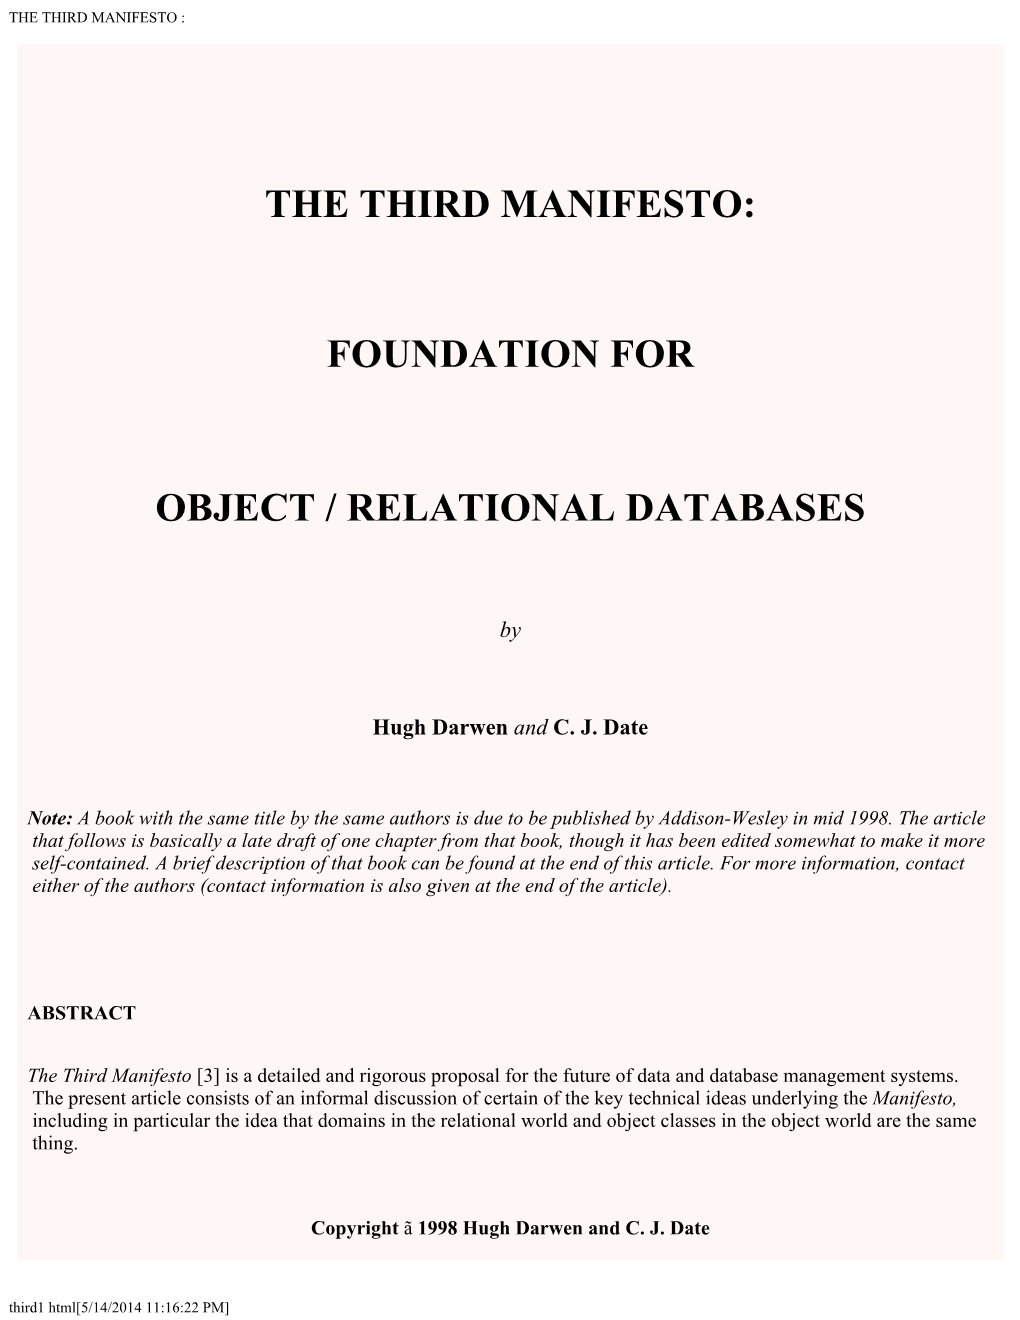 The Third Manifesto